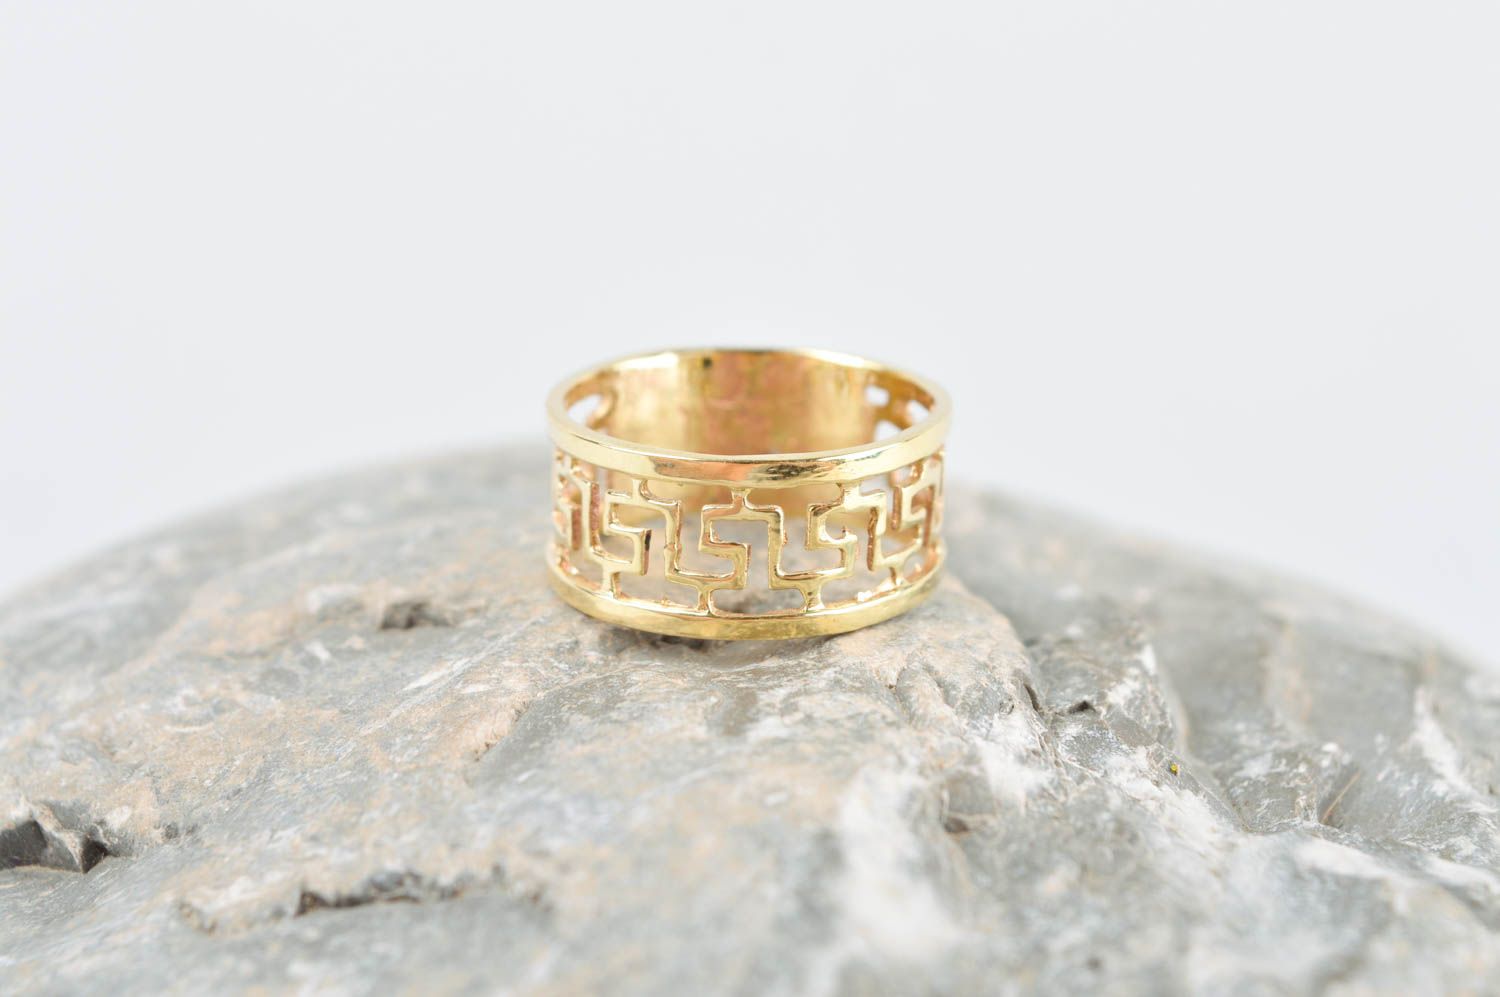 Украшение из металла кольцо ручной работы модное кольцо из латуни изящное фото 1